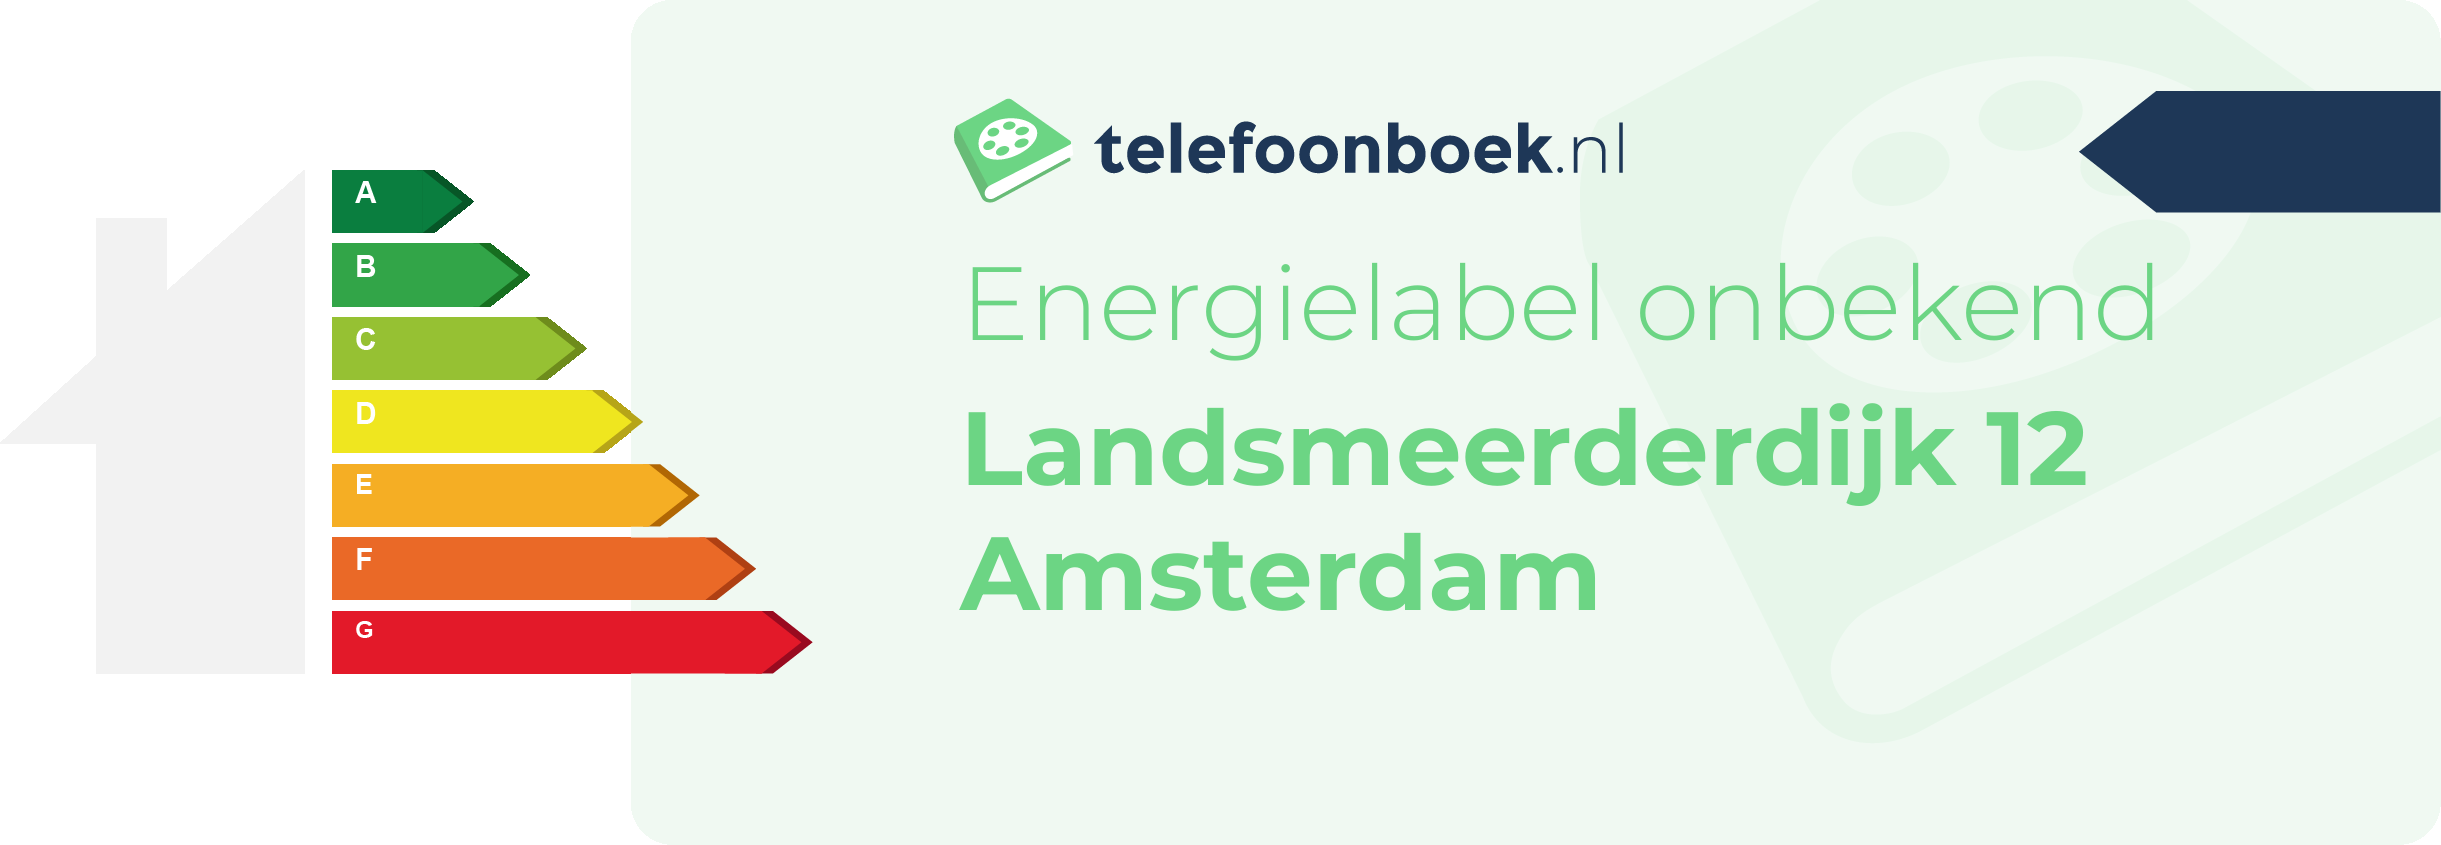 Energielabel Landsmeerderdijk 12 Amsterdam